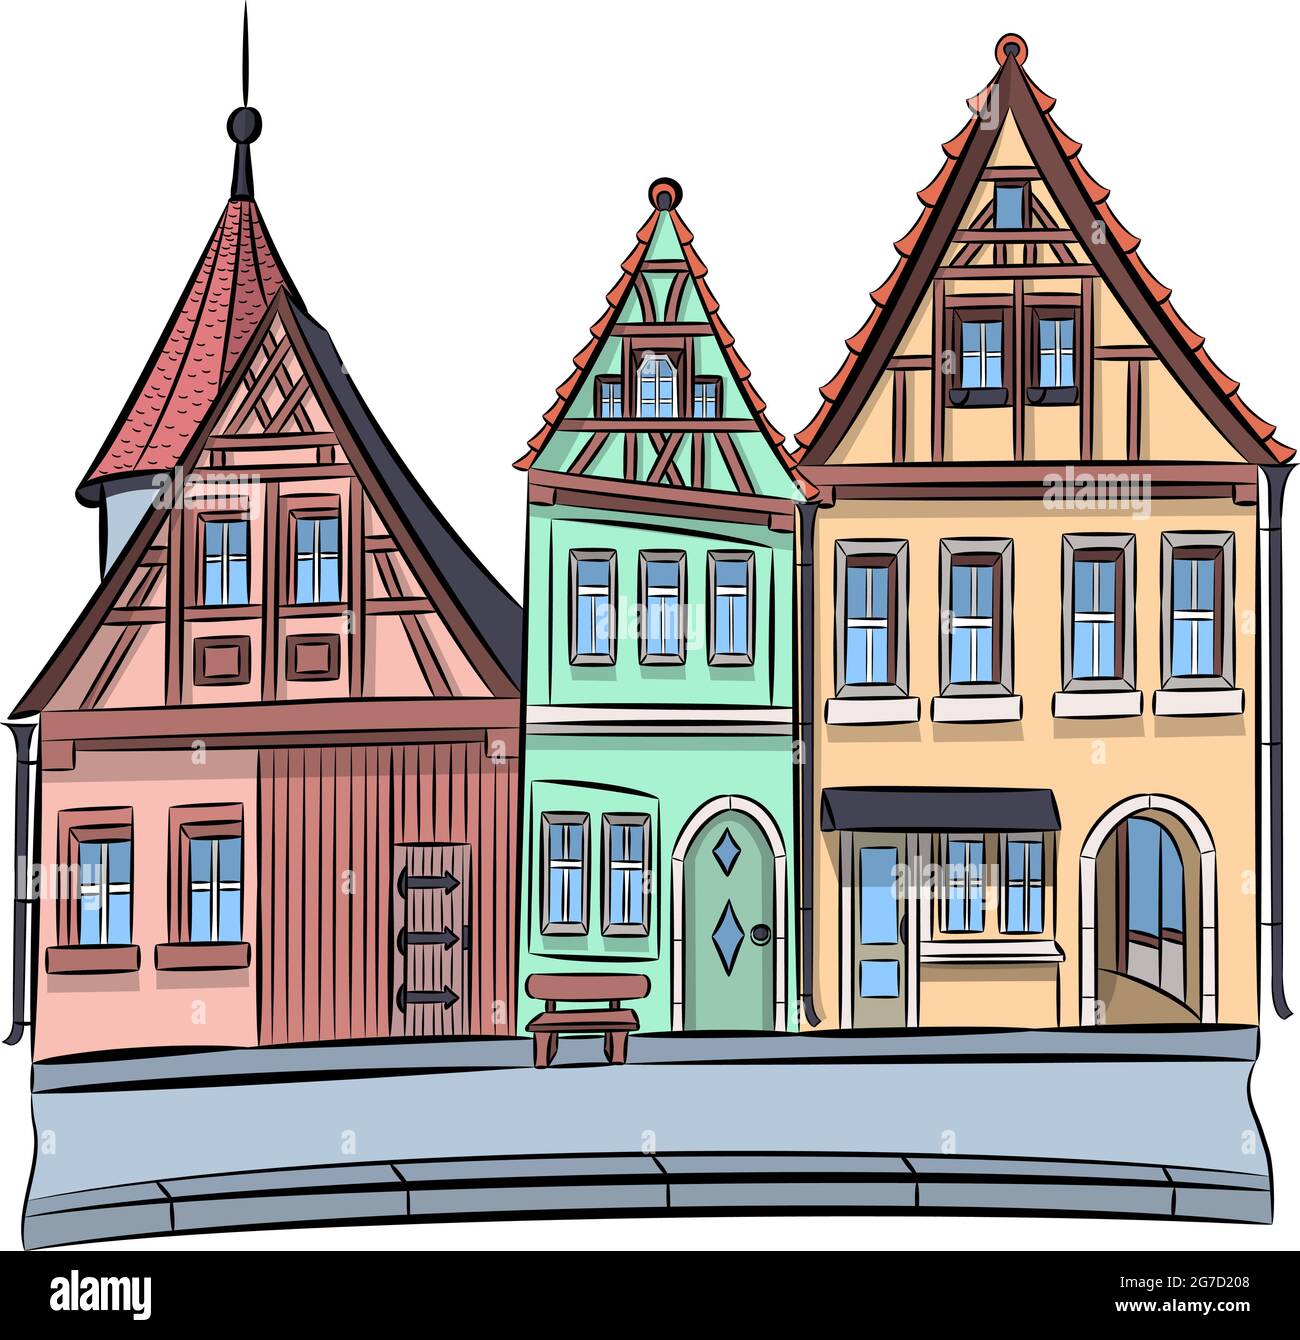 Maisons médiévales à colombages multicolores à Rothenburg ob der Tauber. Illustration vectorielle. Illustration de Vecteur